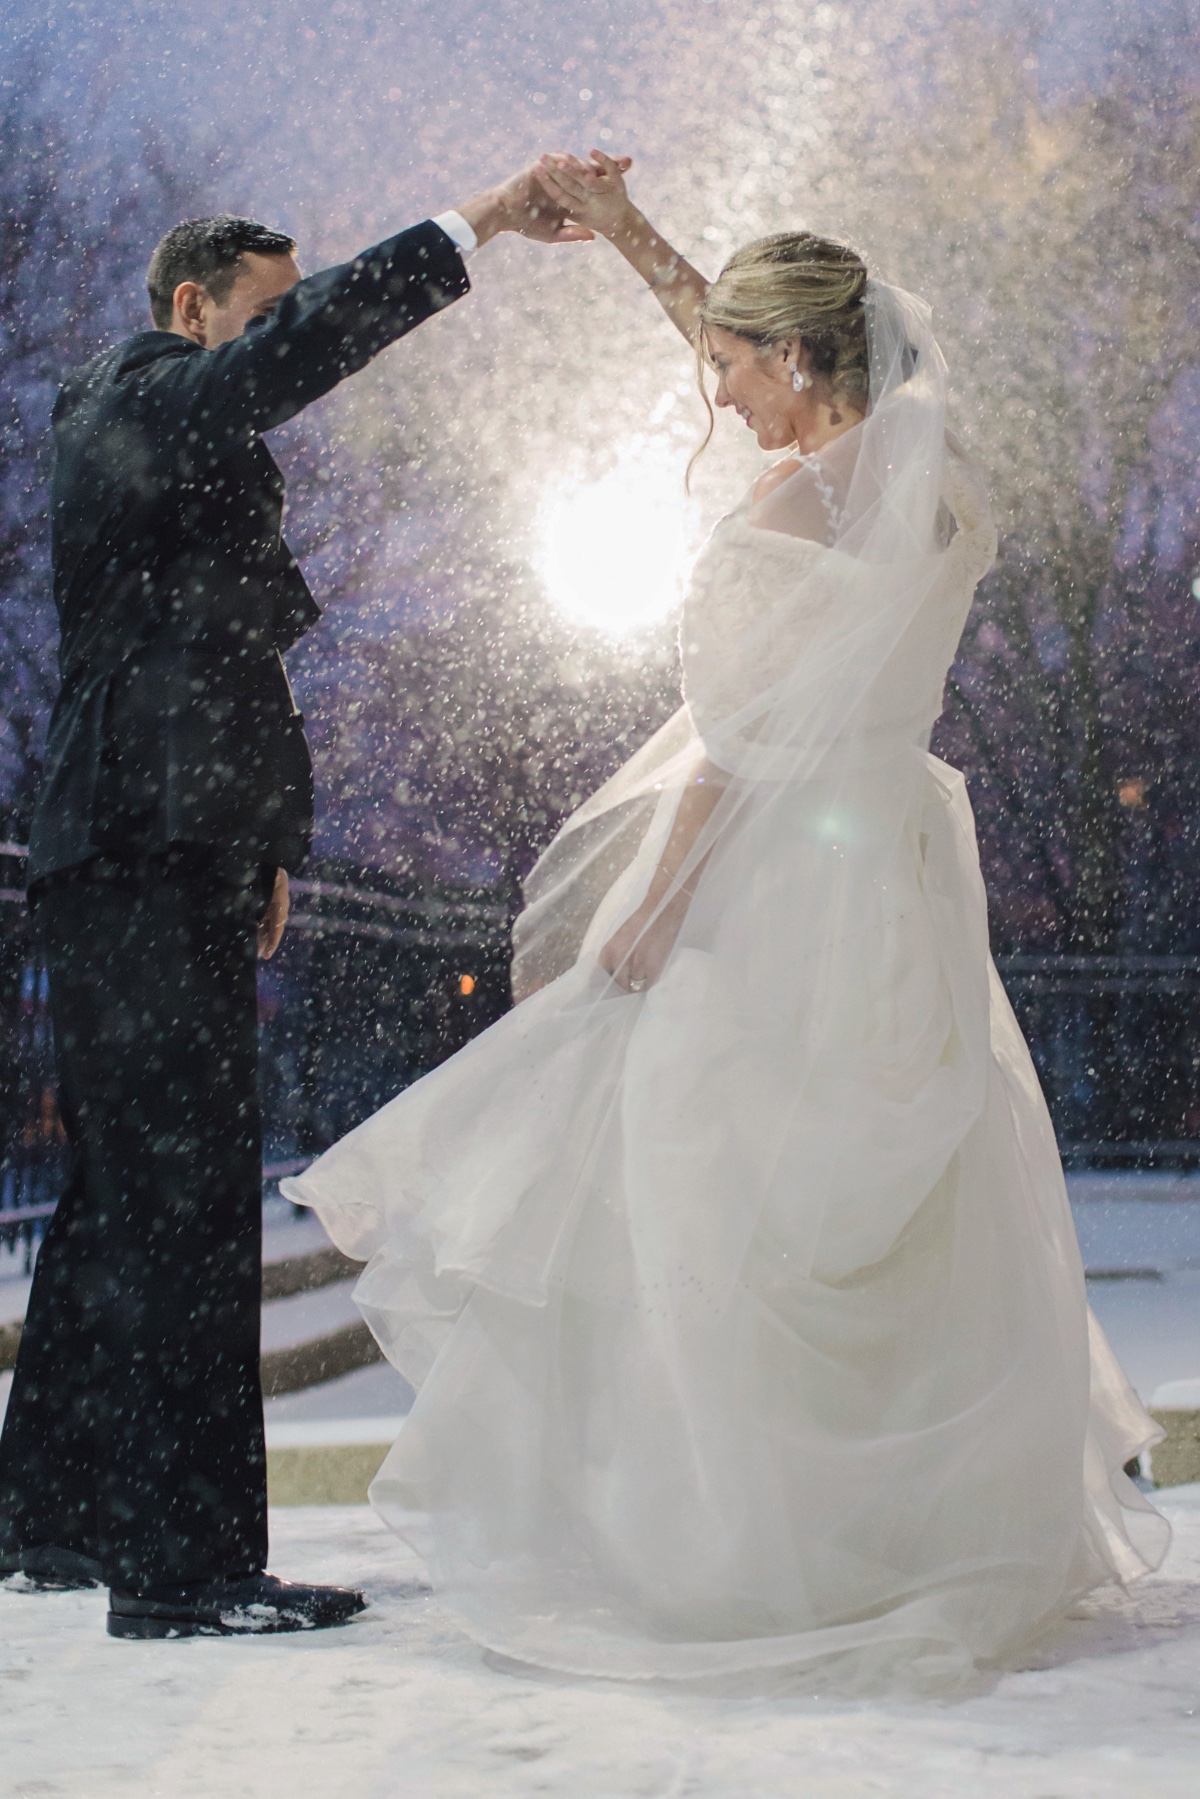 Snowy wedding